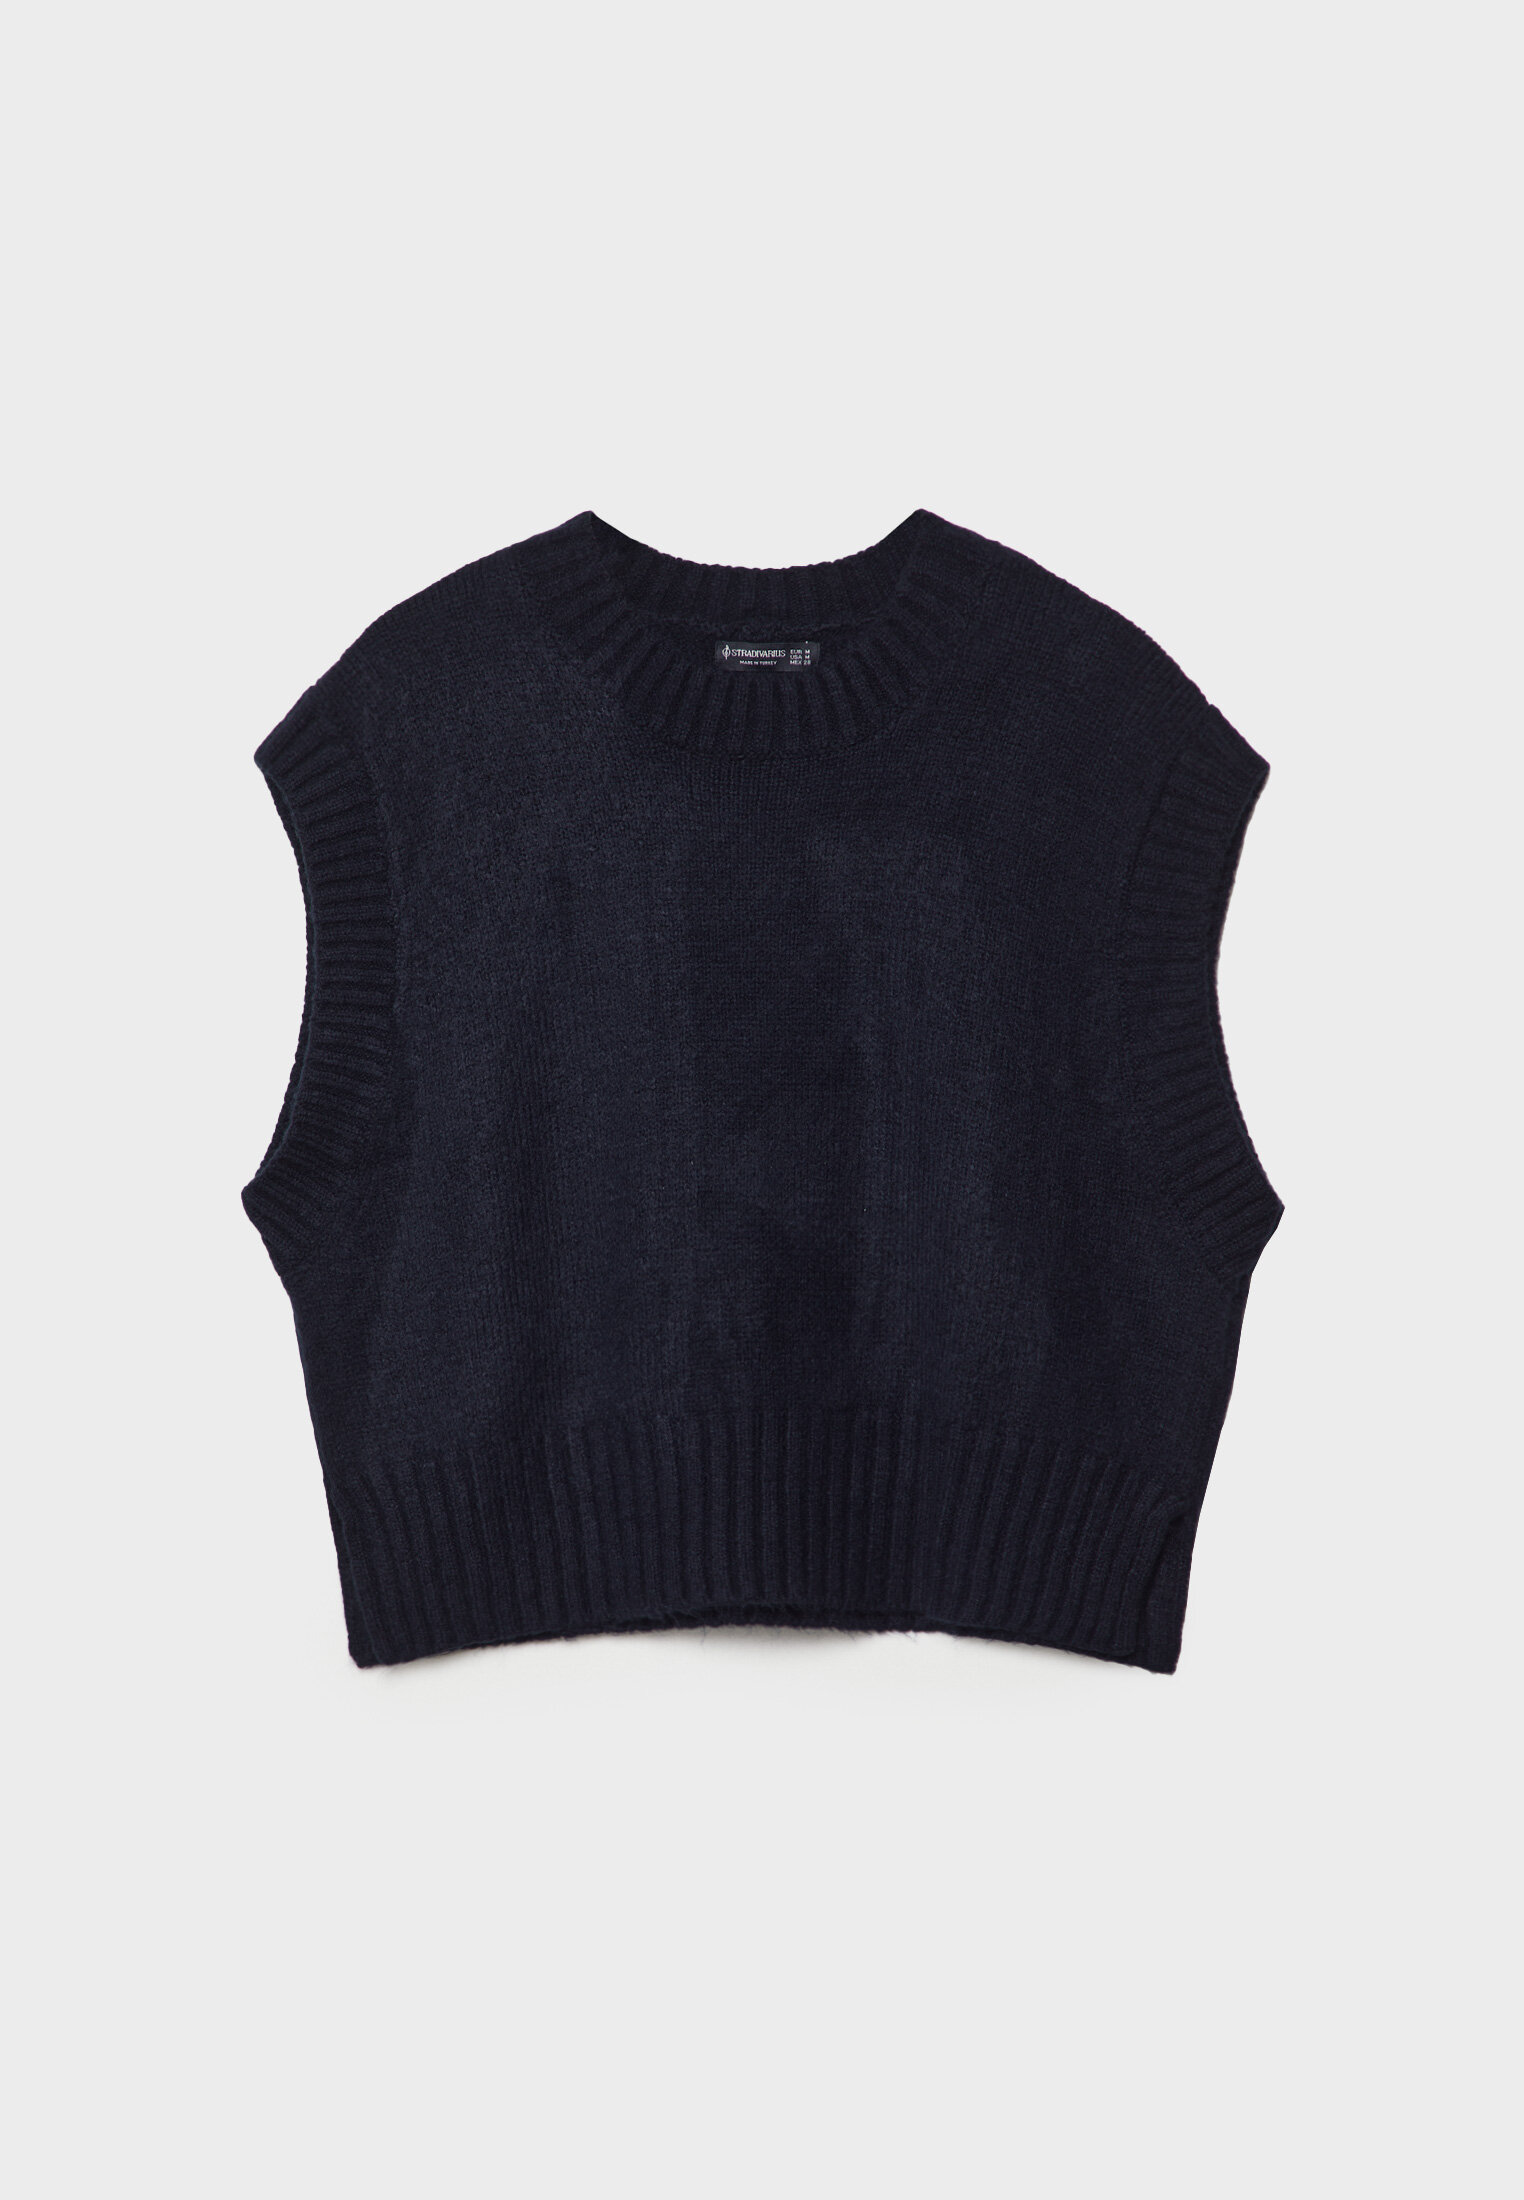 再販開始【りん様専用】sowell melton knit vest トップス